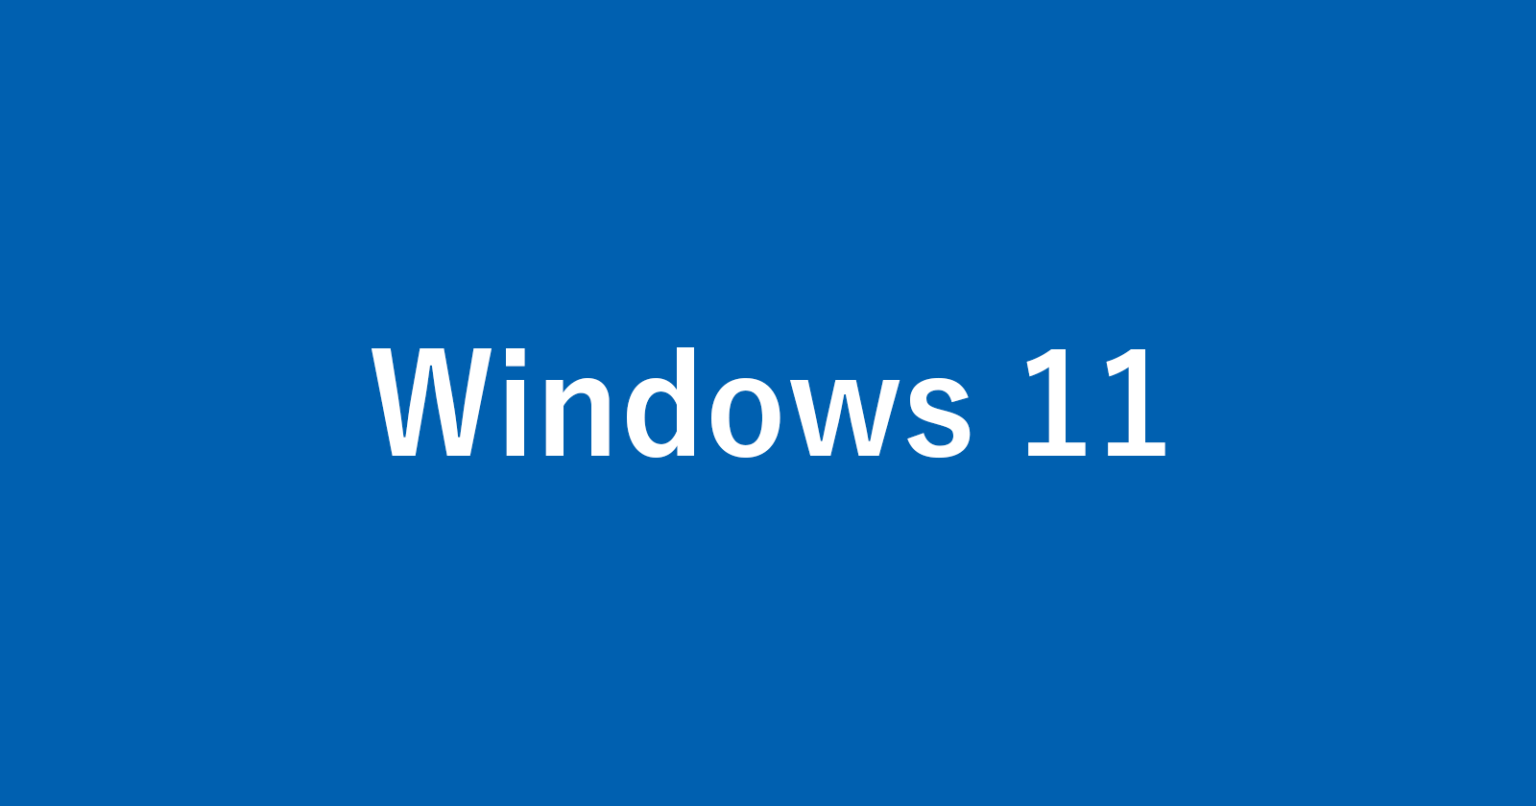 Windows 11 の設定と使い方まとめ - PC設定のカルマ